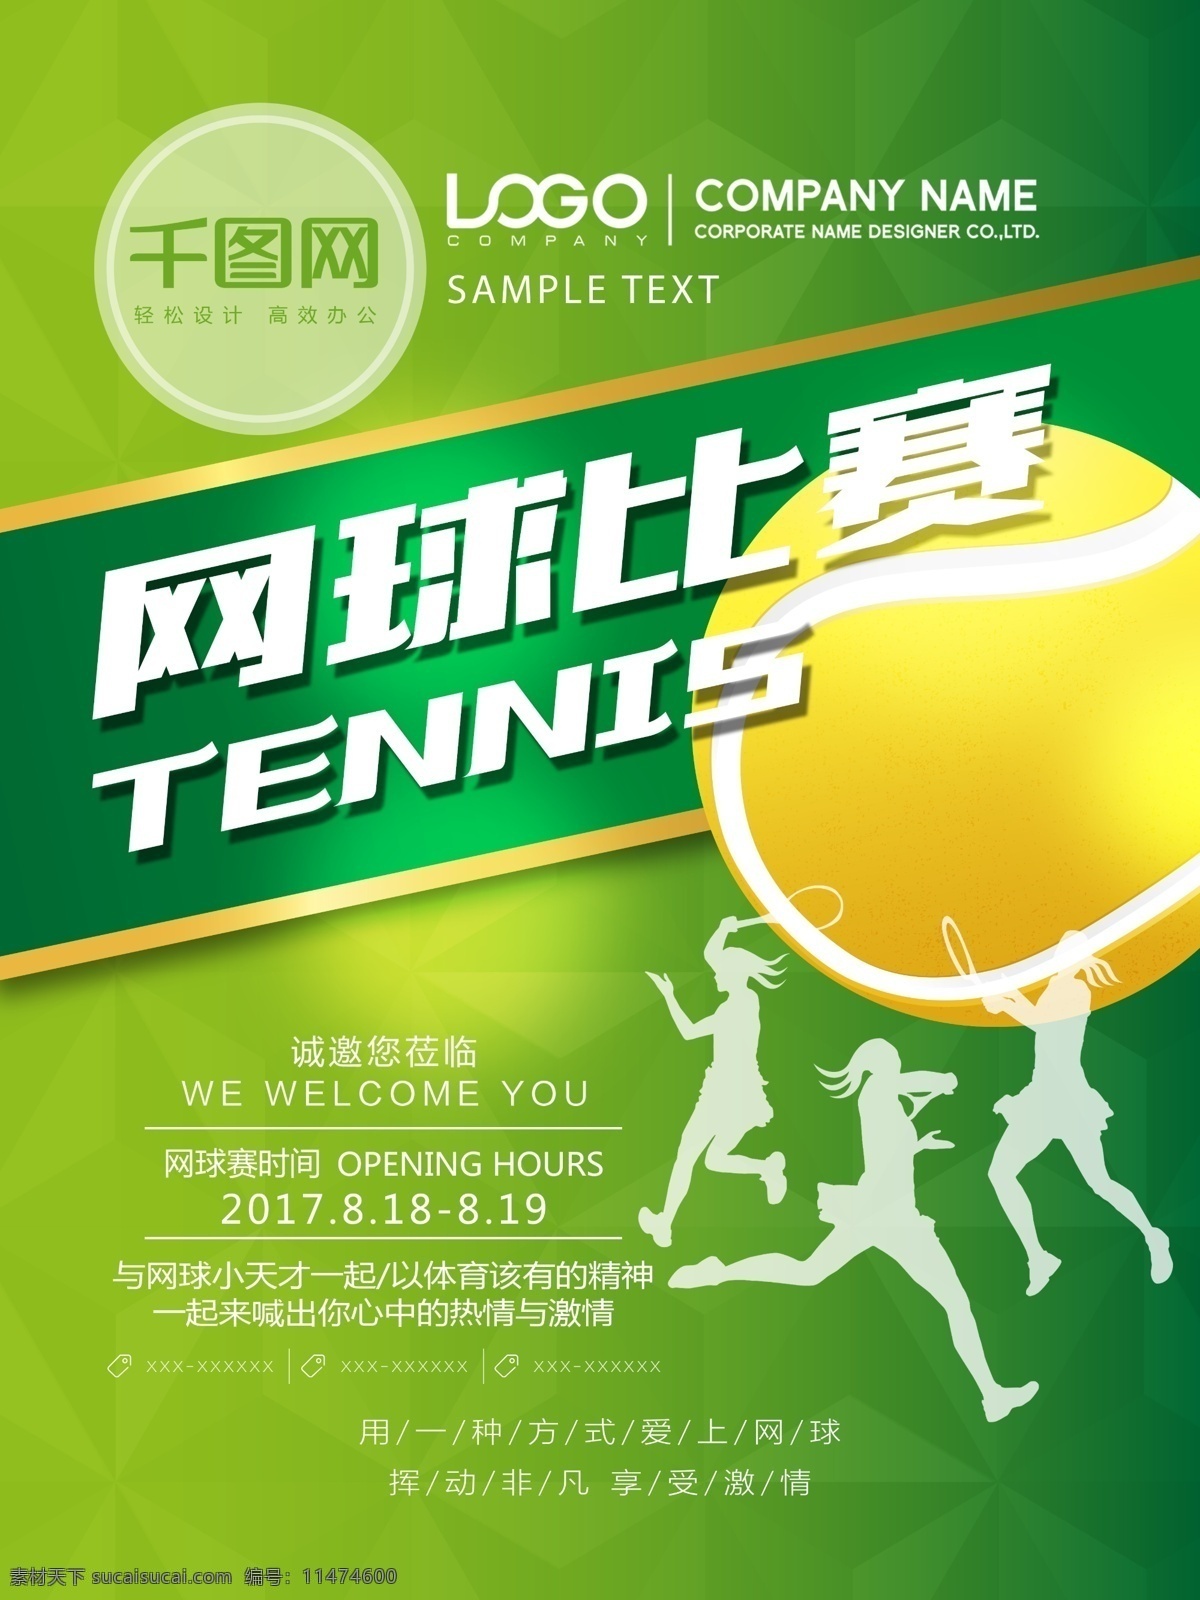 清新 简约 绿色 网球 比赛 宣传海报 网球比赛 网球海报 网球运动 打网球 网球培训 网球教育 网球特训 网球特训营 网球训练 宣传 海报